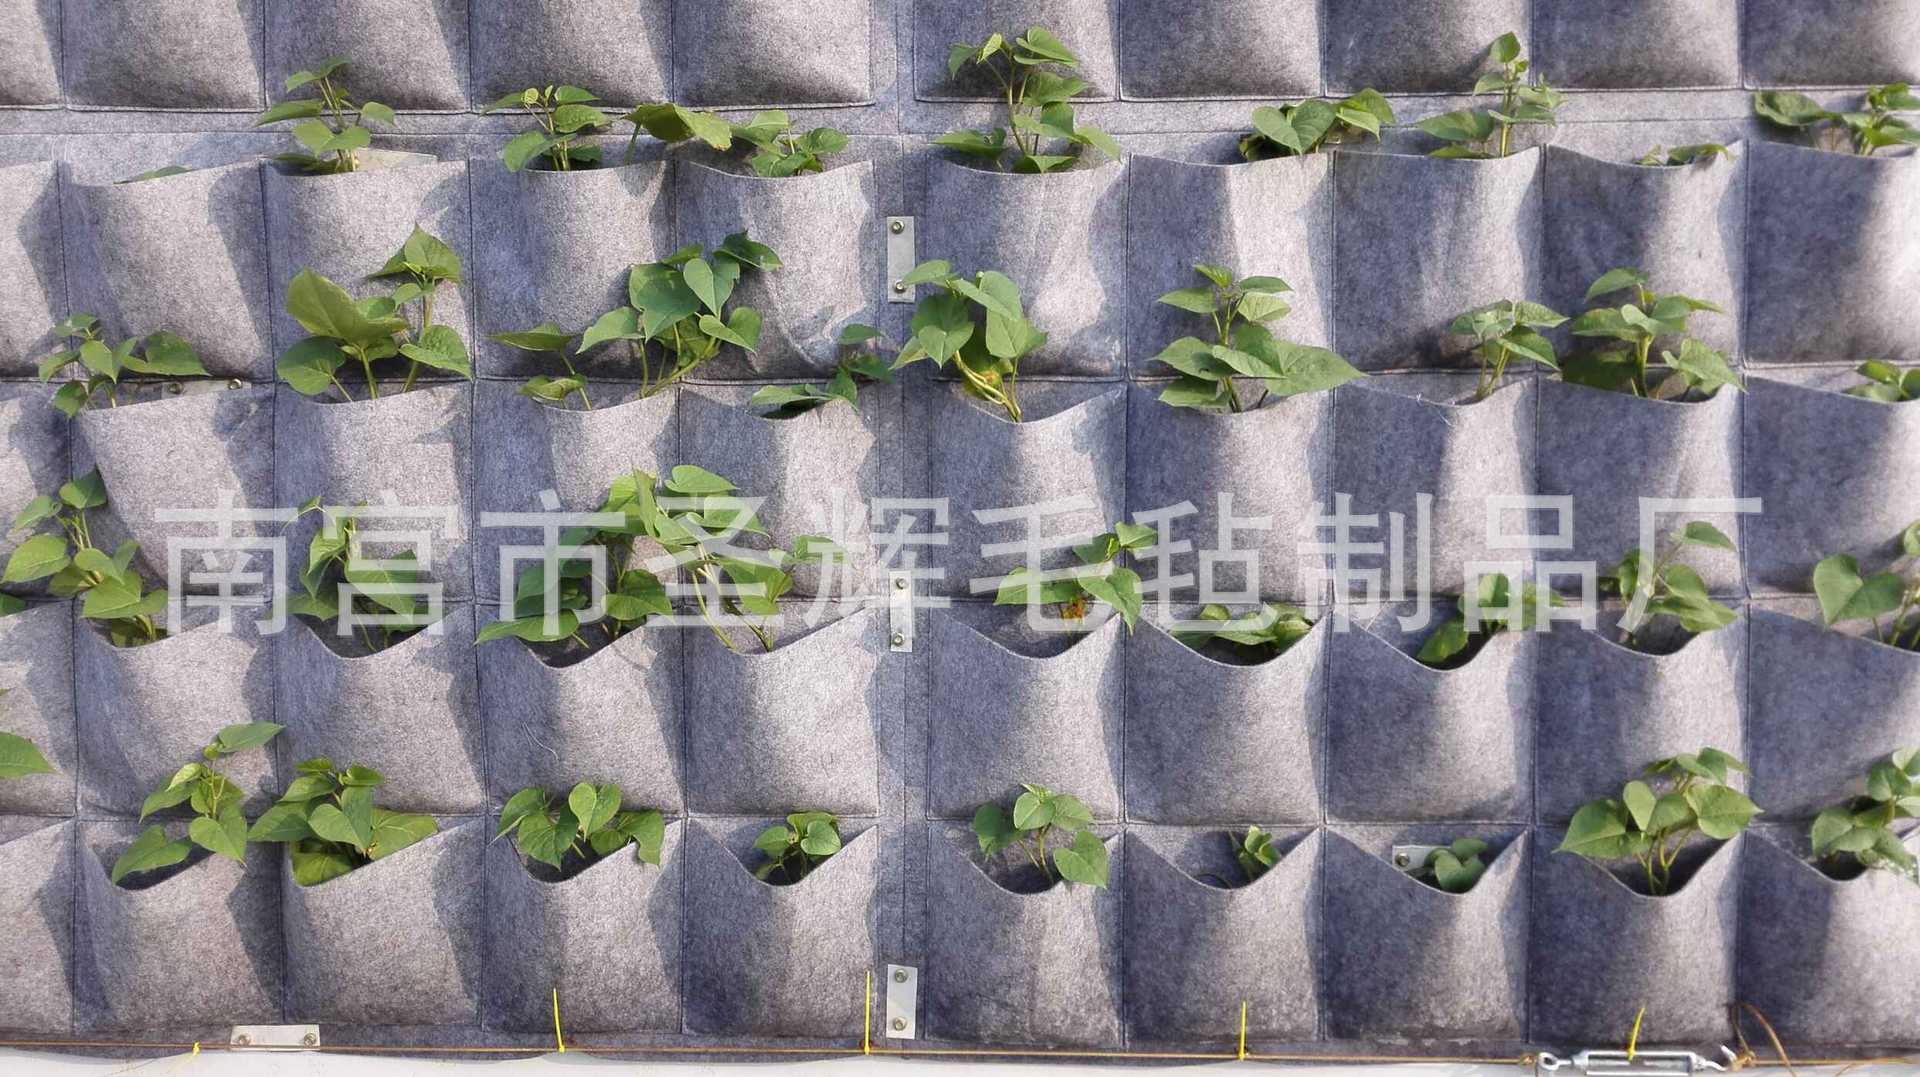 立体壁挂种植袋 垂直绿化室内外植物袋 立体墙毛毡种植袋 美植袋